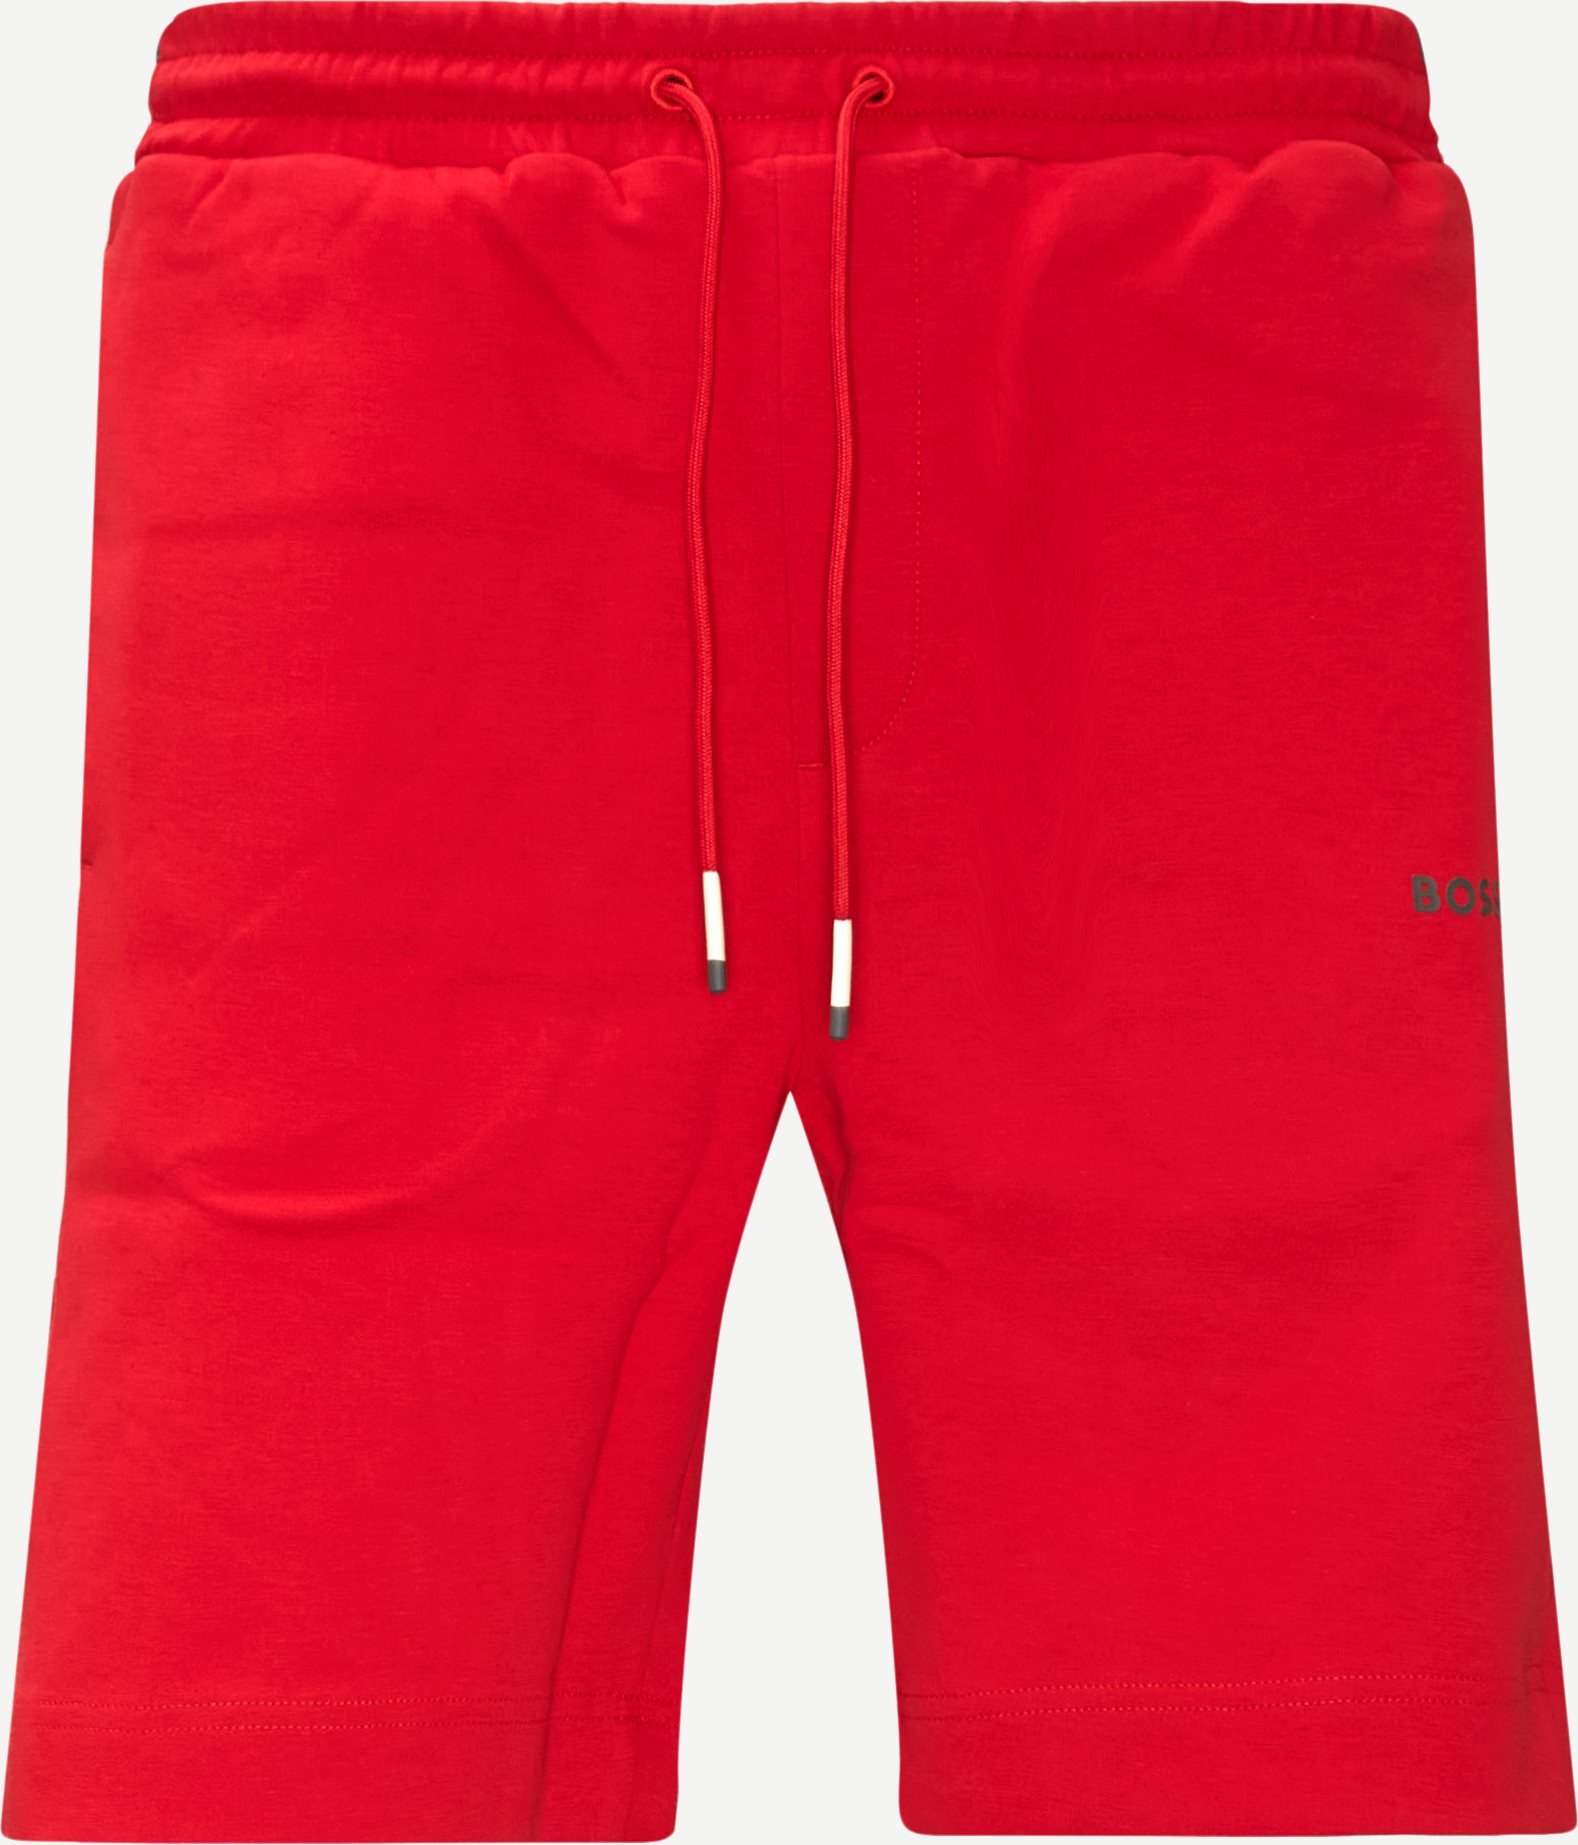 Shorts - Regular fit - Röd